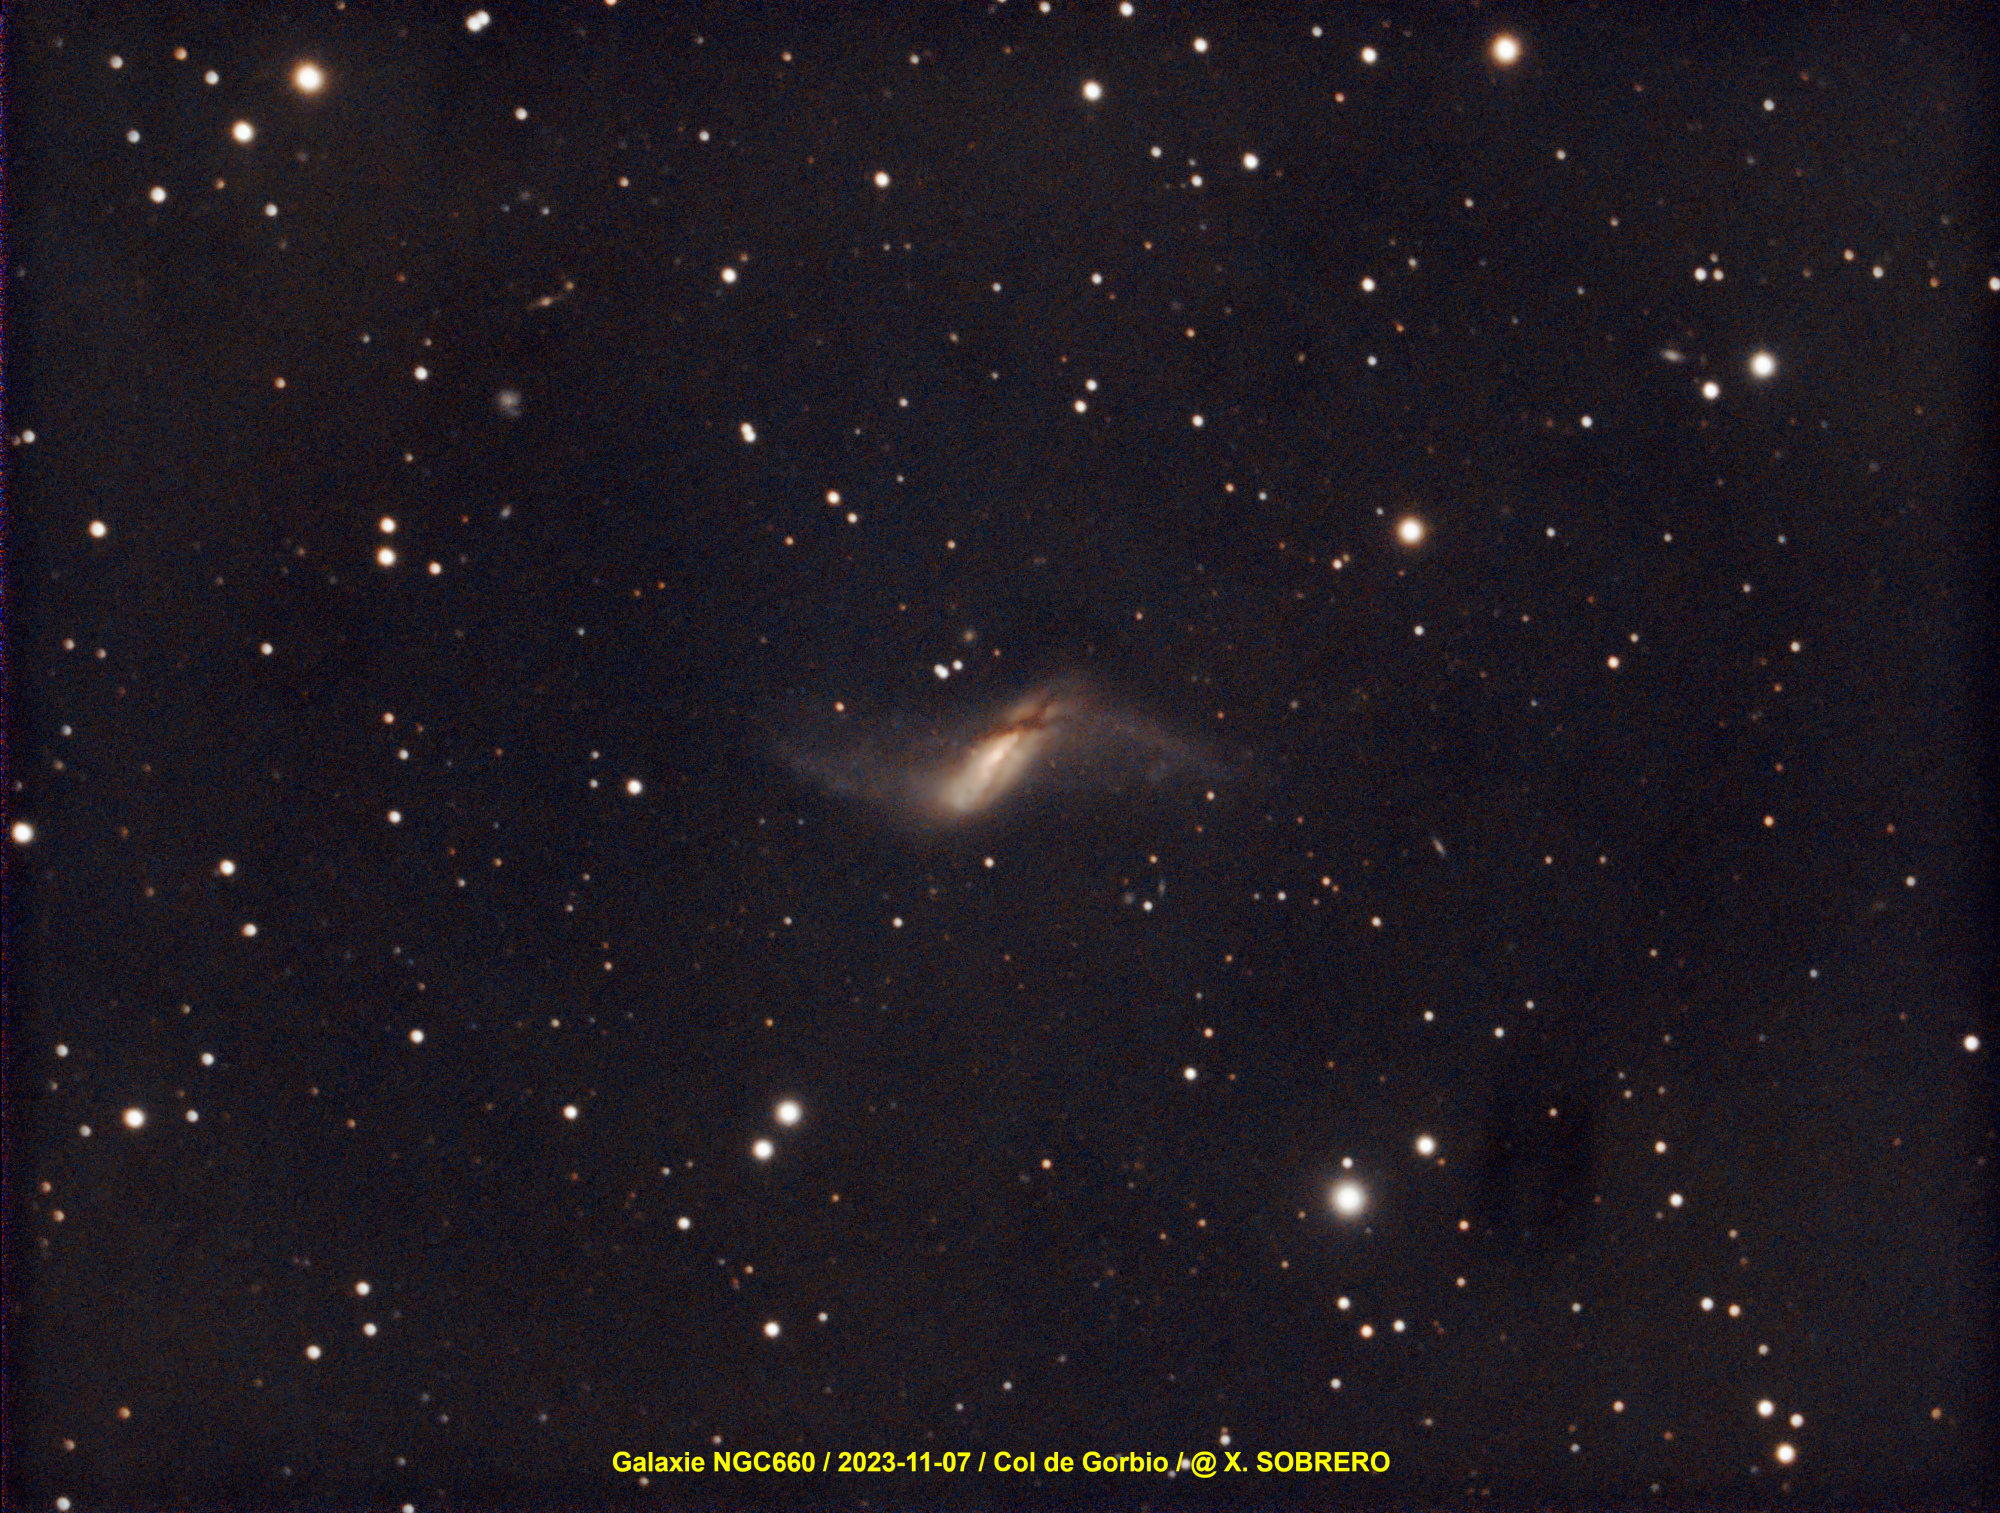 NGC660_SIRILIC_GRAXPERT_SIRIL_GIMP_signee.thumb.jpg.829d98b4abd5b587ca1c44985cef8f2f.jpg